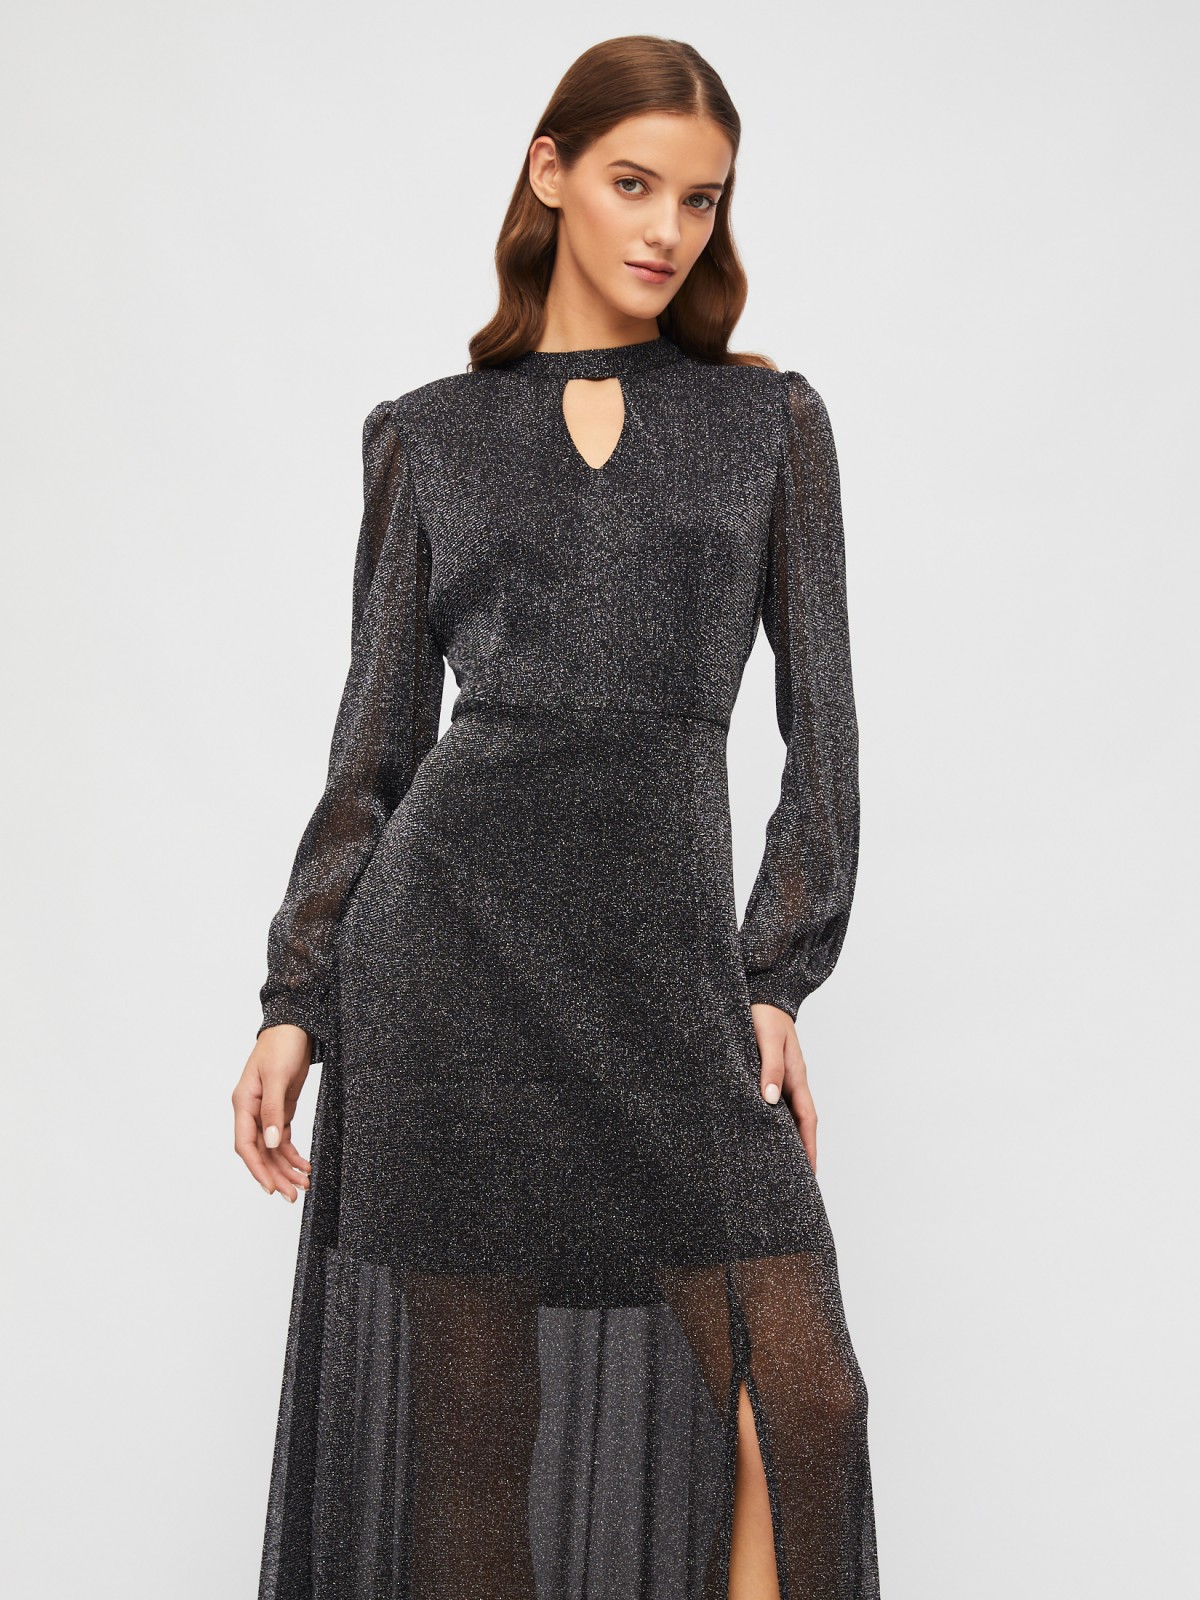 Полупрозрачное платье макси с разрезом на подоле и люрексом zolla 023458159233, цвет черный, размер S - фото 2